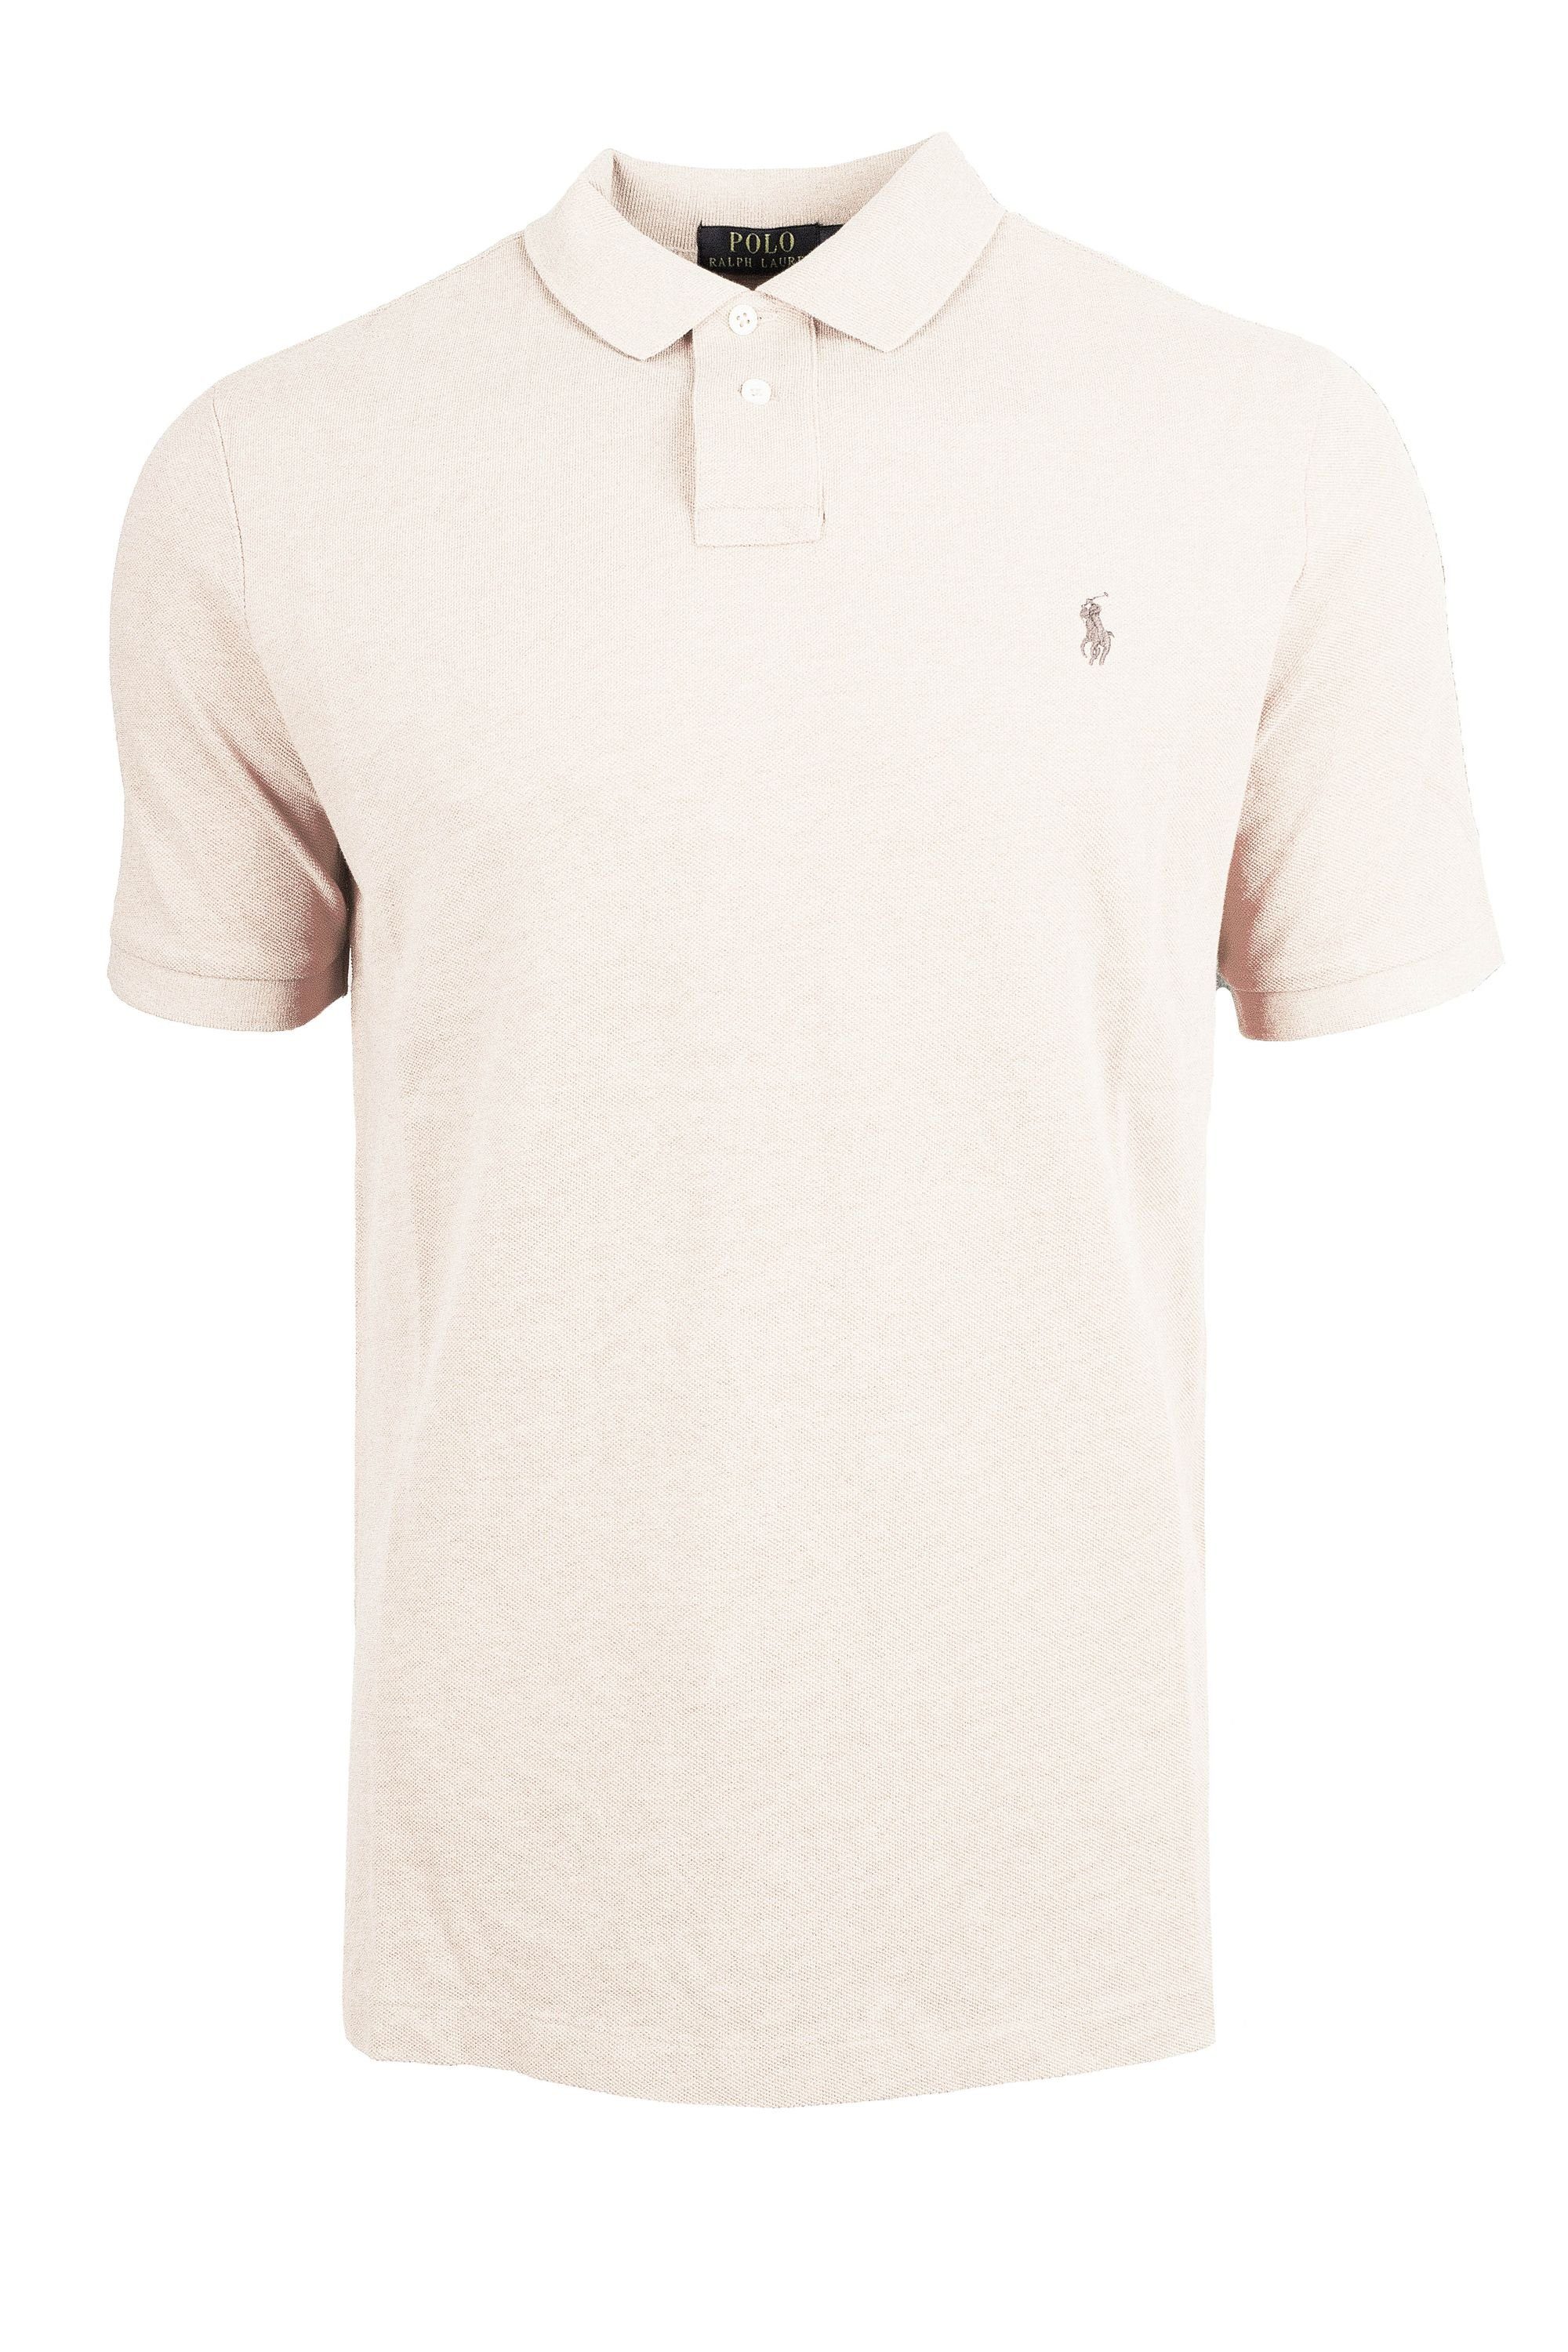 Ralph Lauren Poloshirt Ralph Lauren Herren Poloshirt Slim Fit S-XXL Off White - Grau